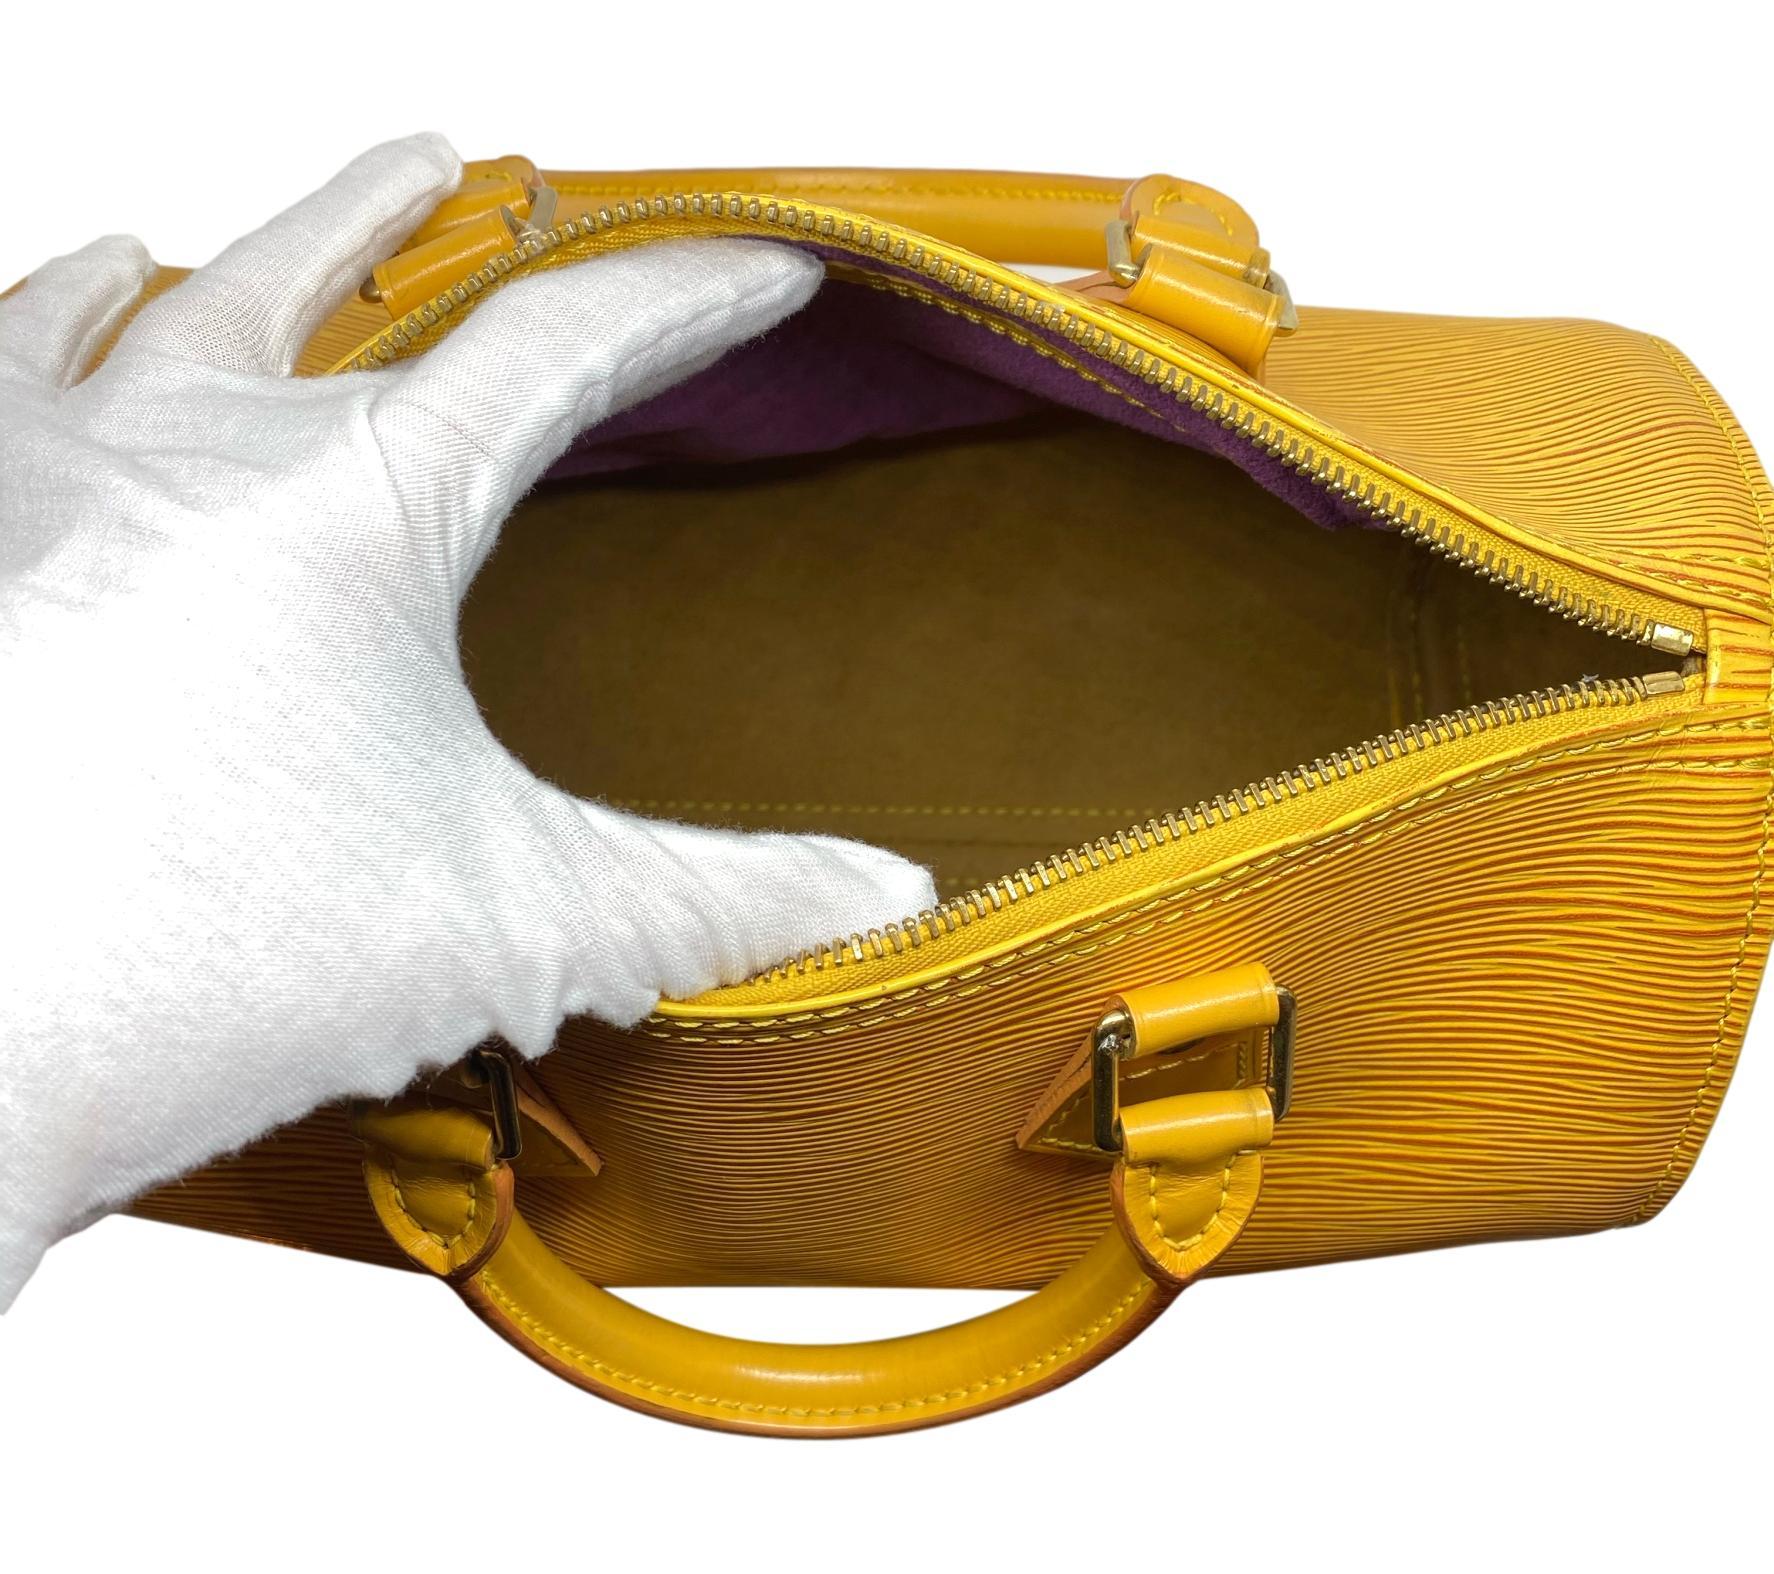 Louis Vuitton Speedy 25 Yellow EPI Leather Handbag, France 1995. 3